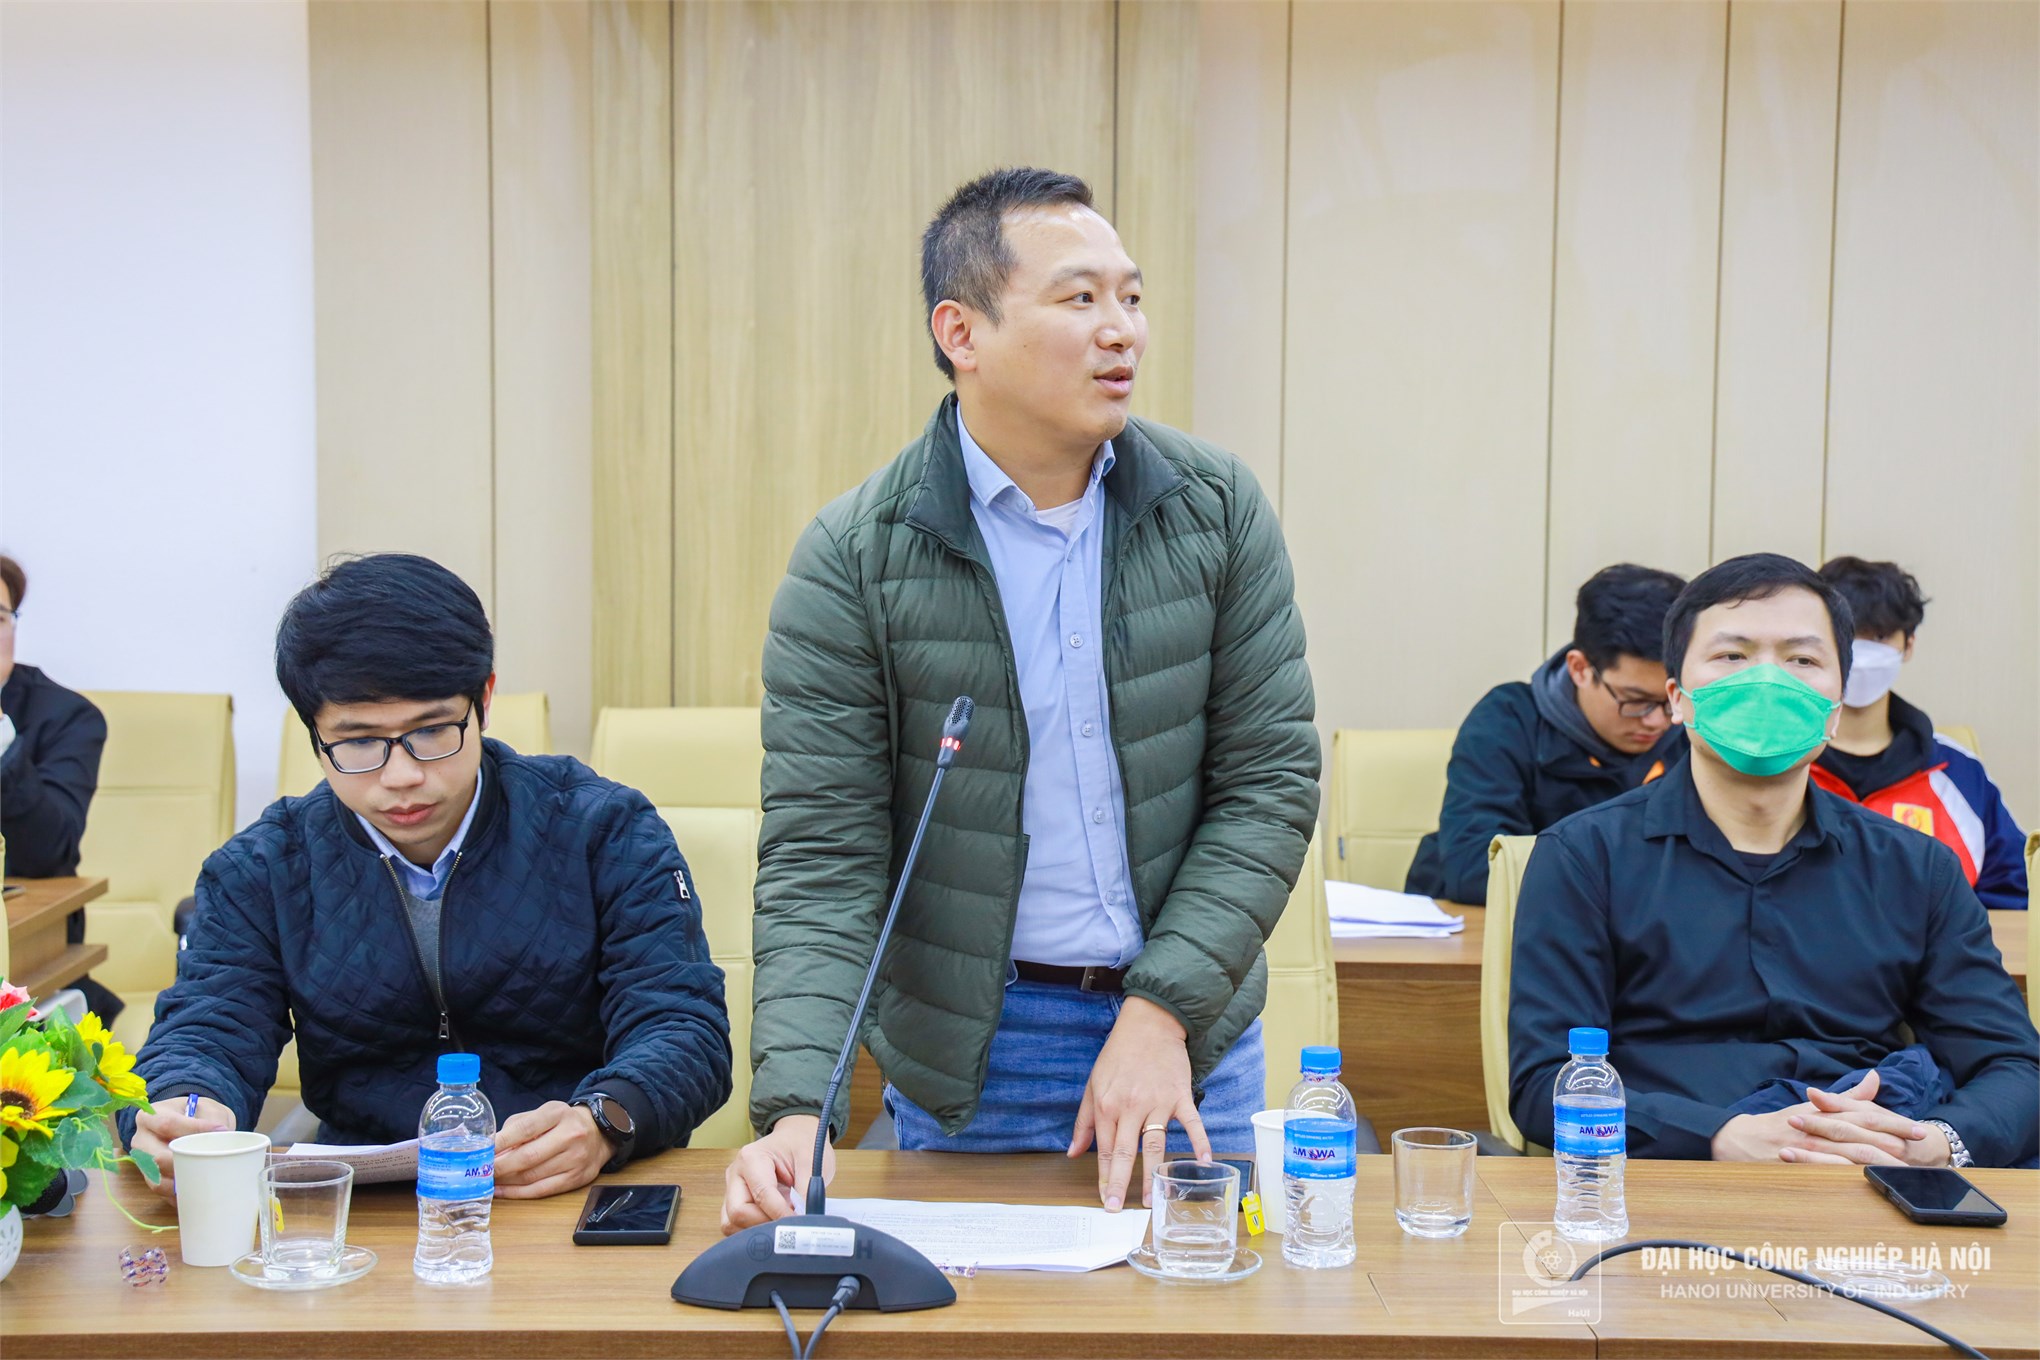 Tuổi trẻ Trường Đại học Công nghiệp Hà Nội giương cao ngọn cờ chuyển đổi số